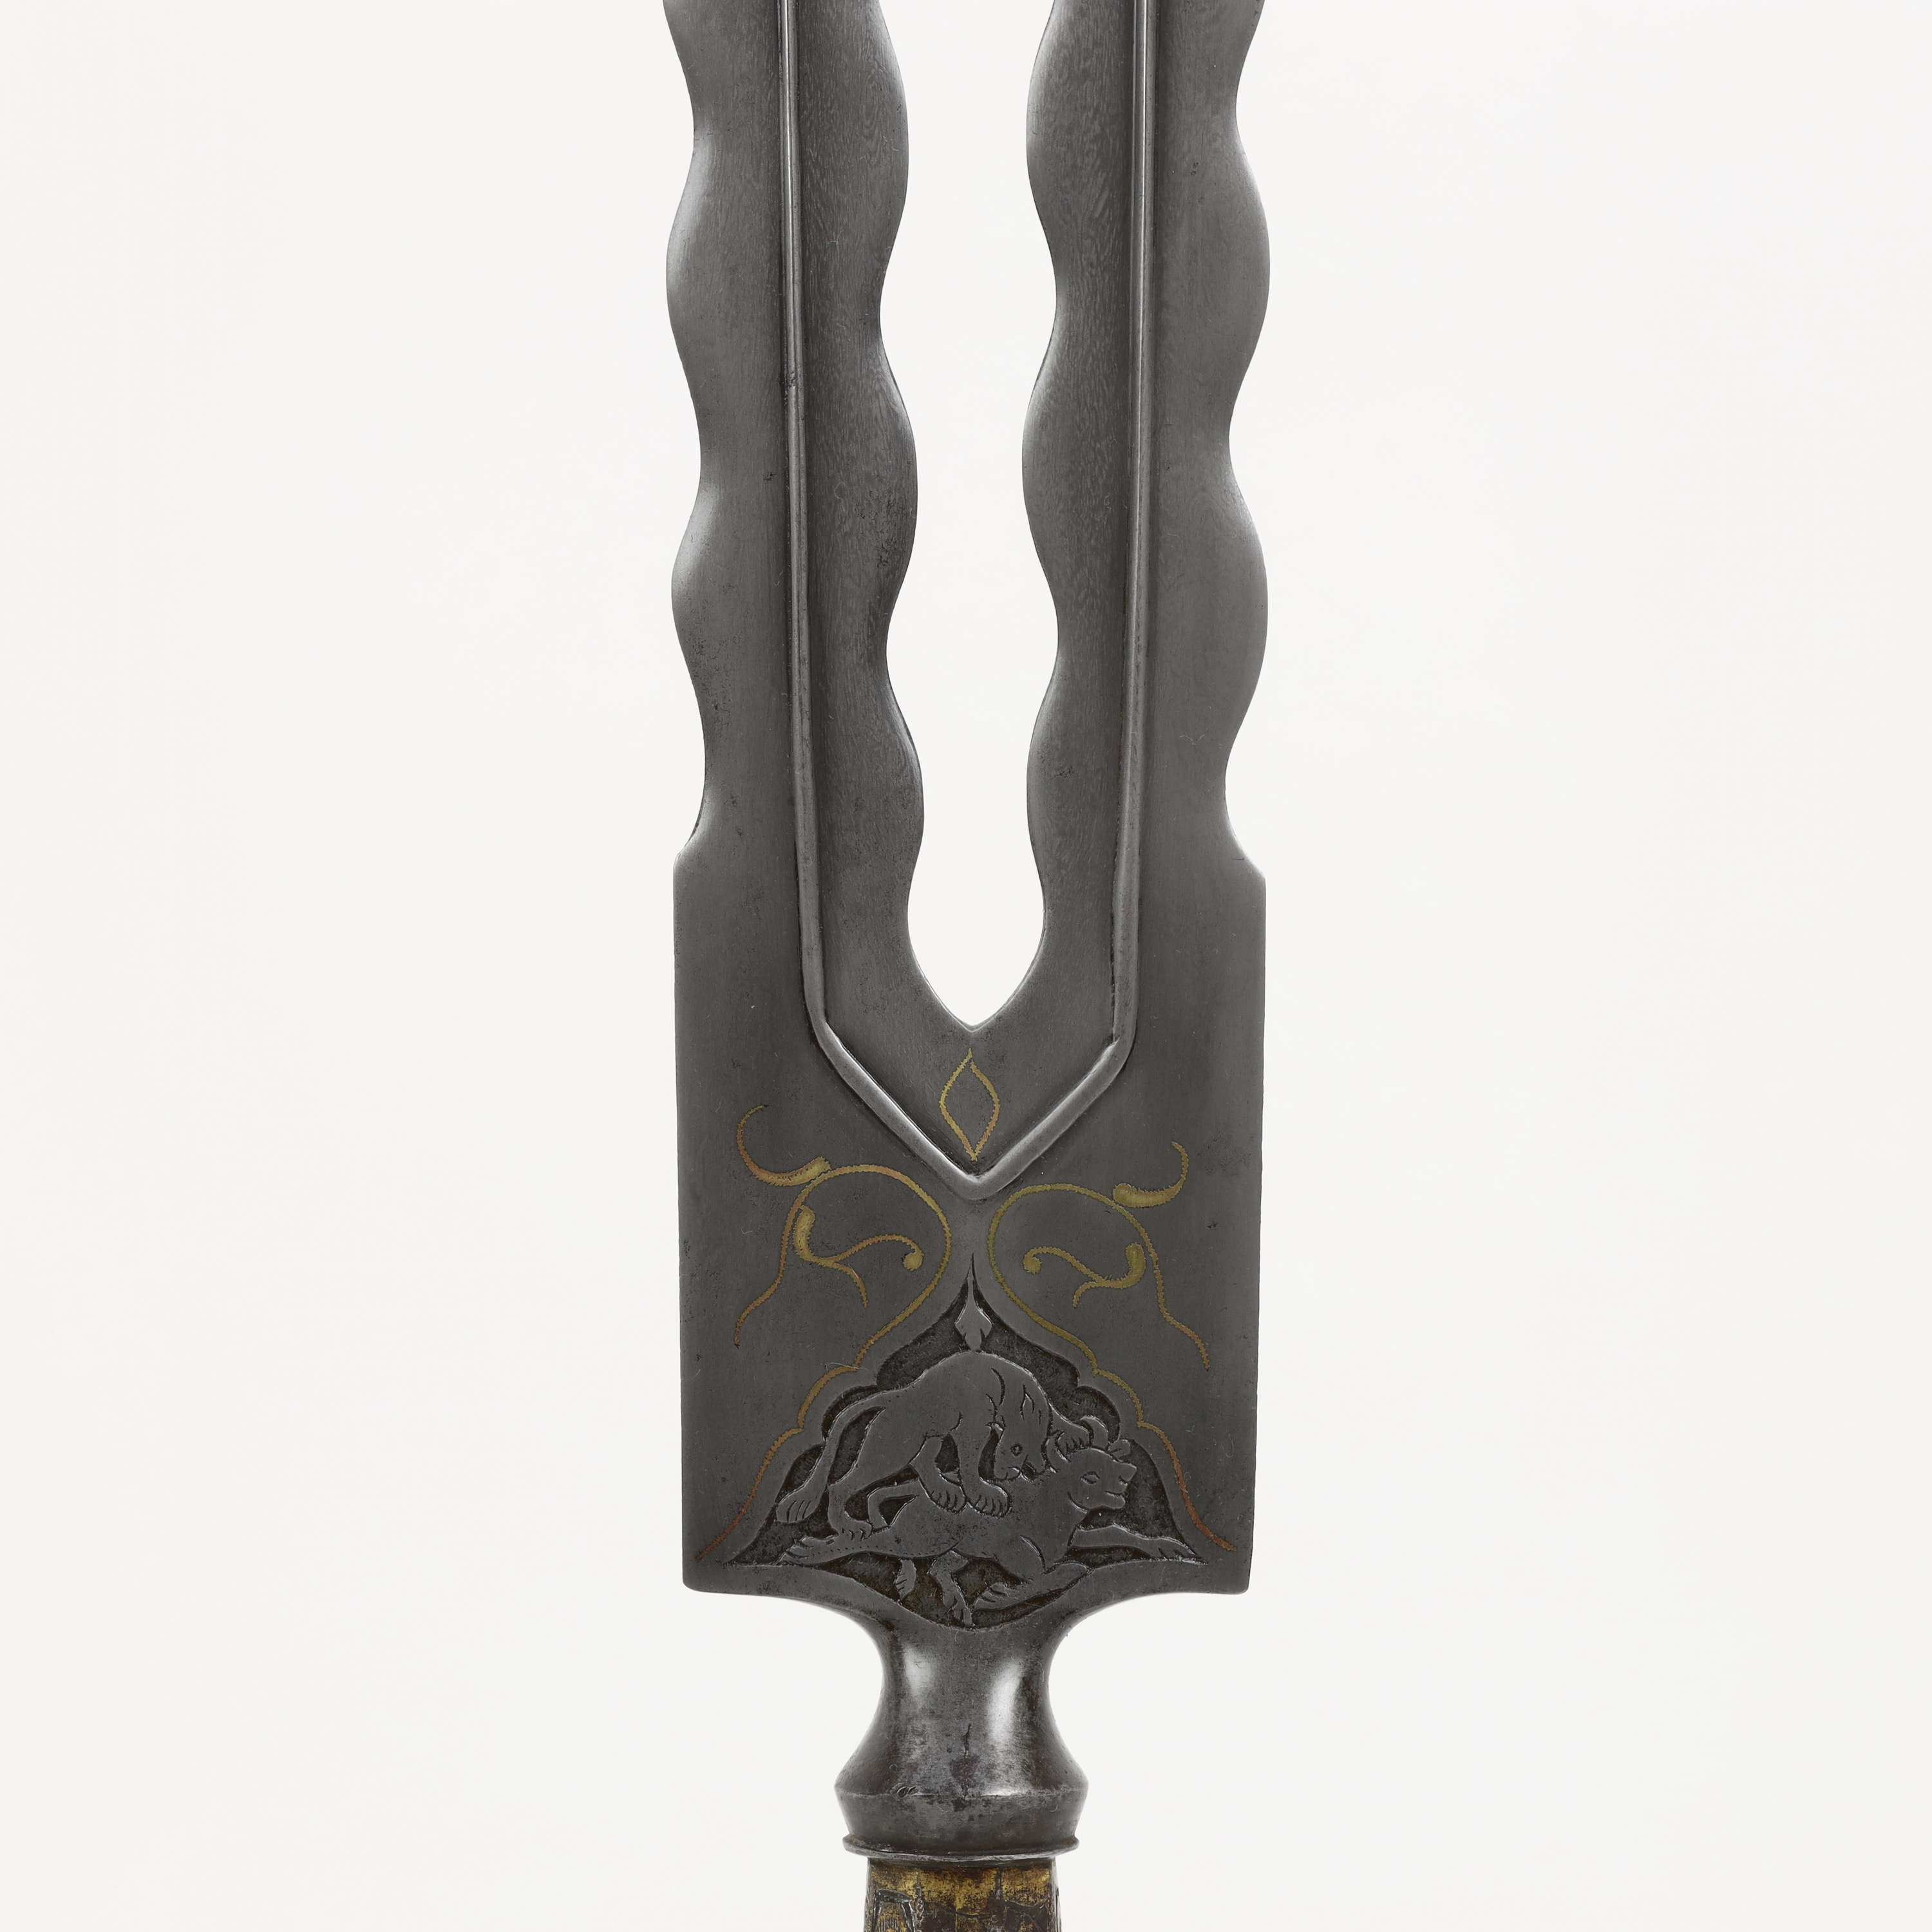 Persian double spearhead of wootz steel